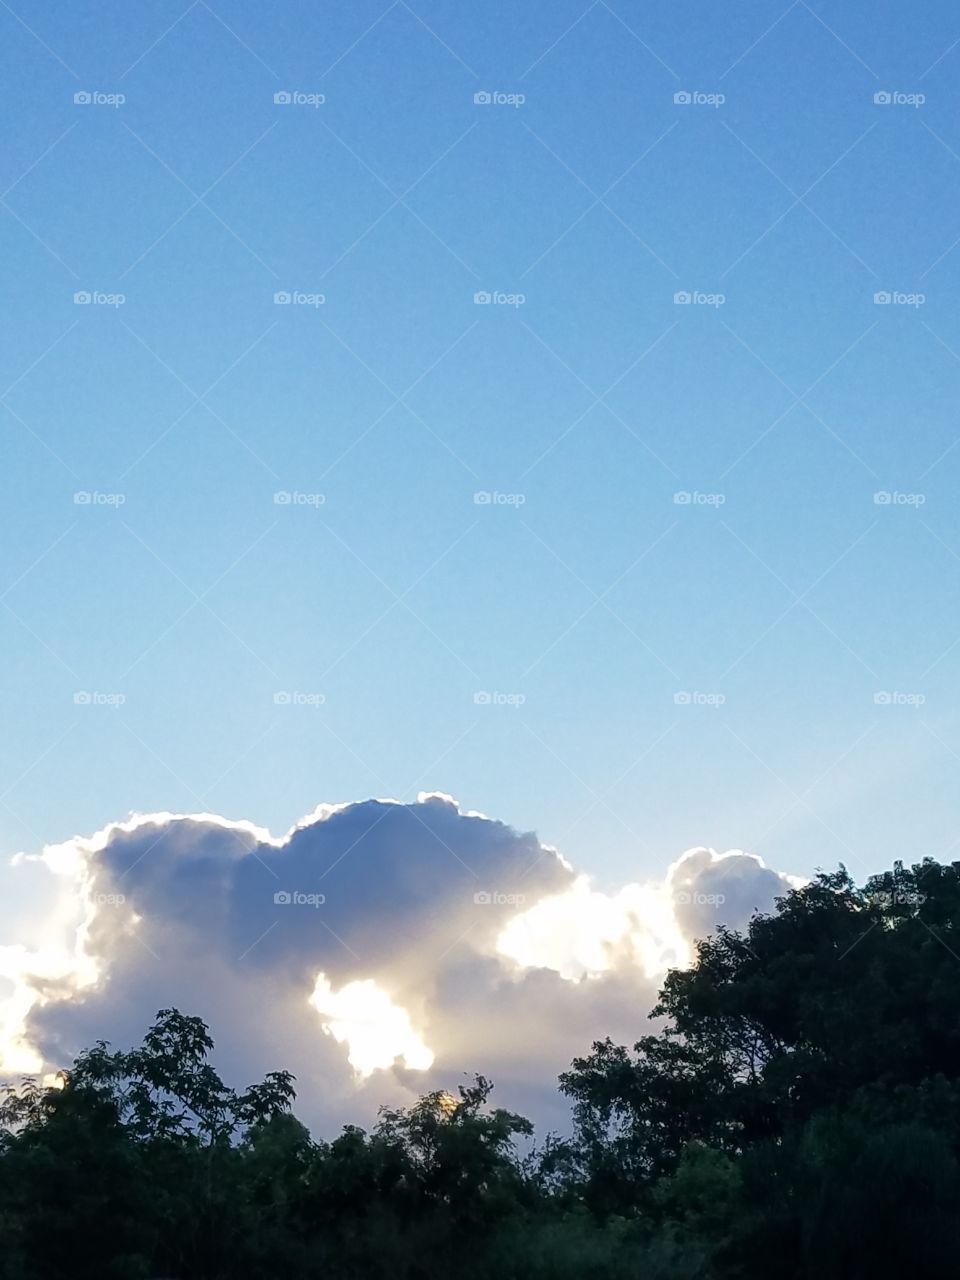 cloudscope